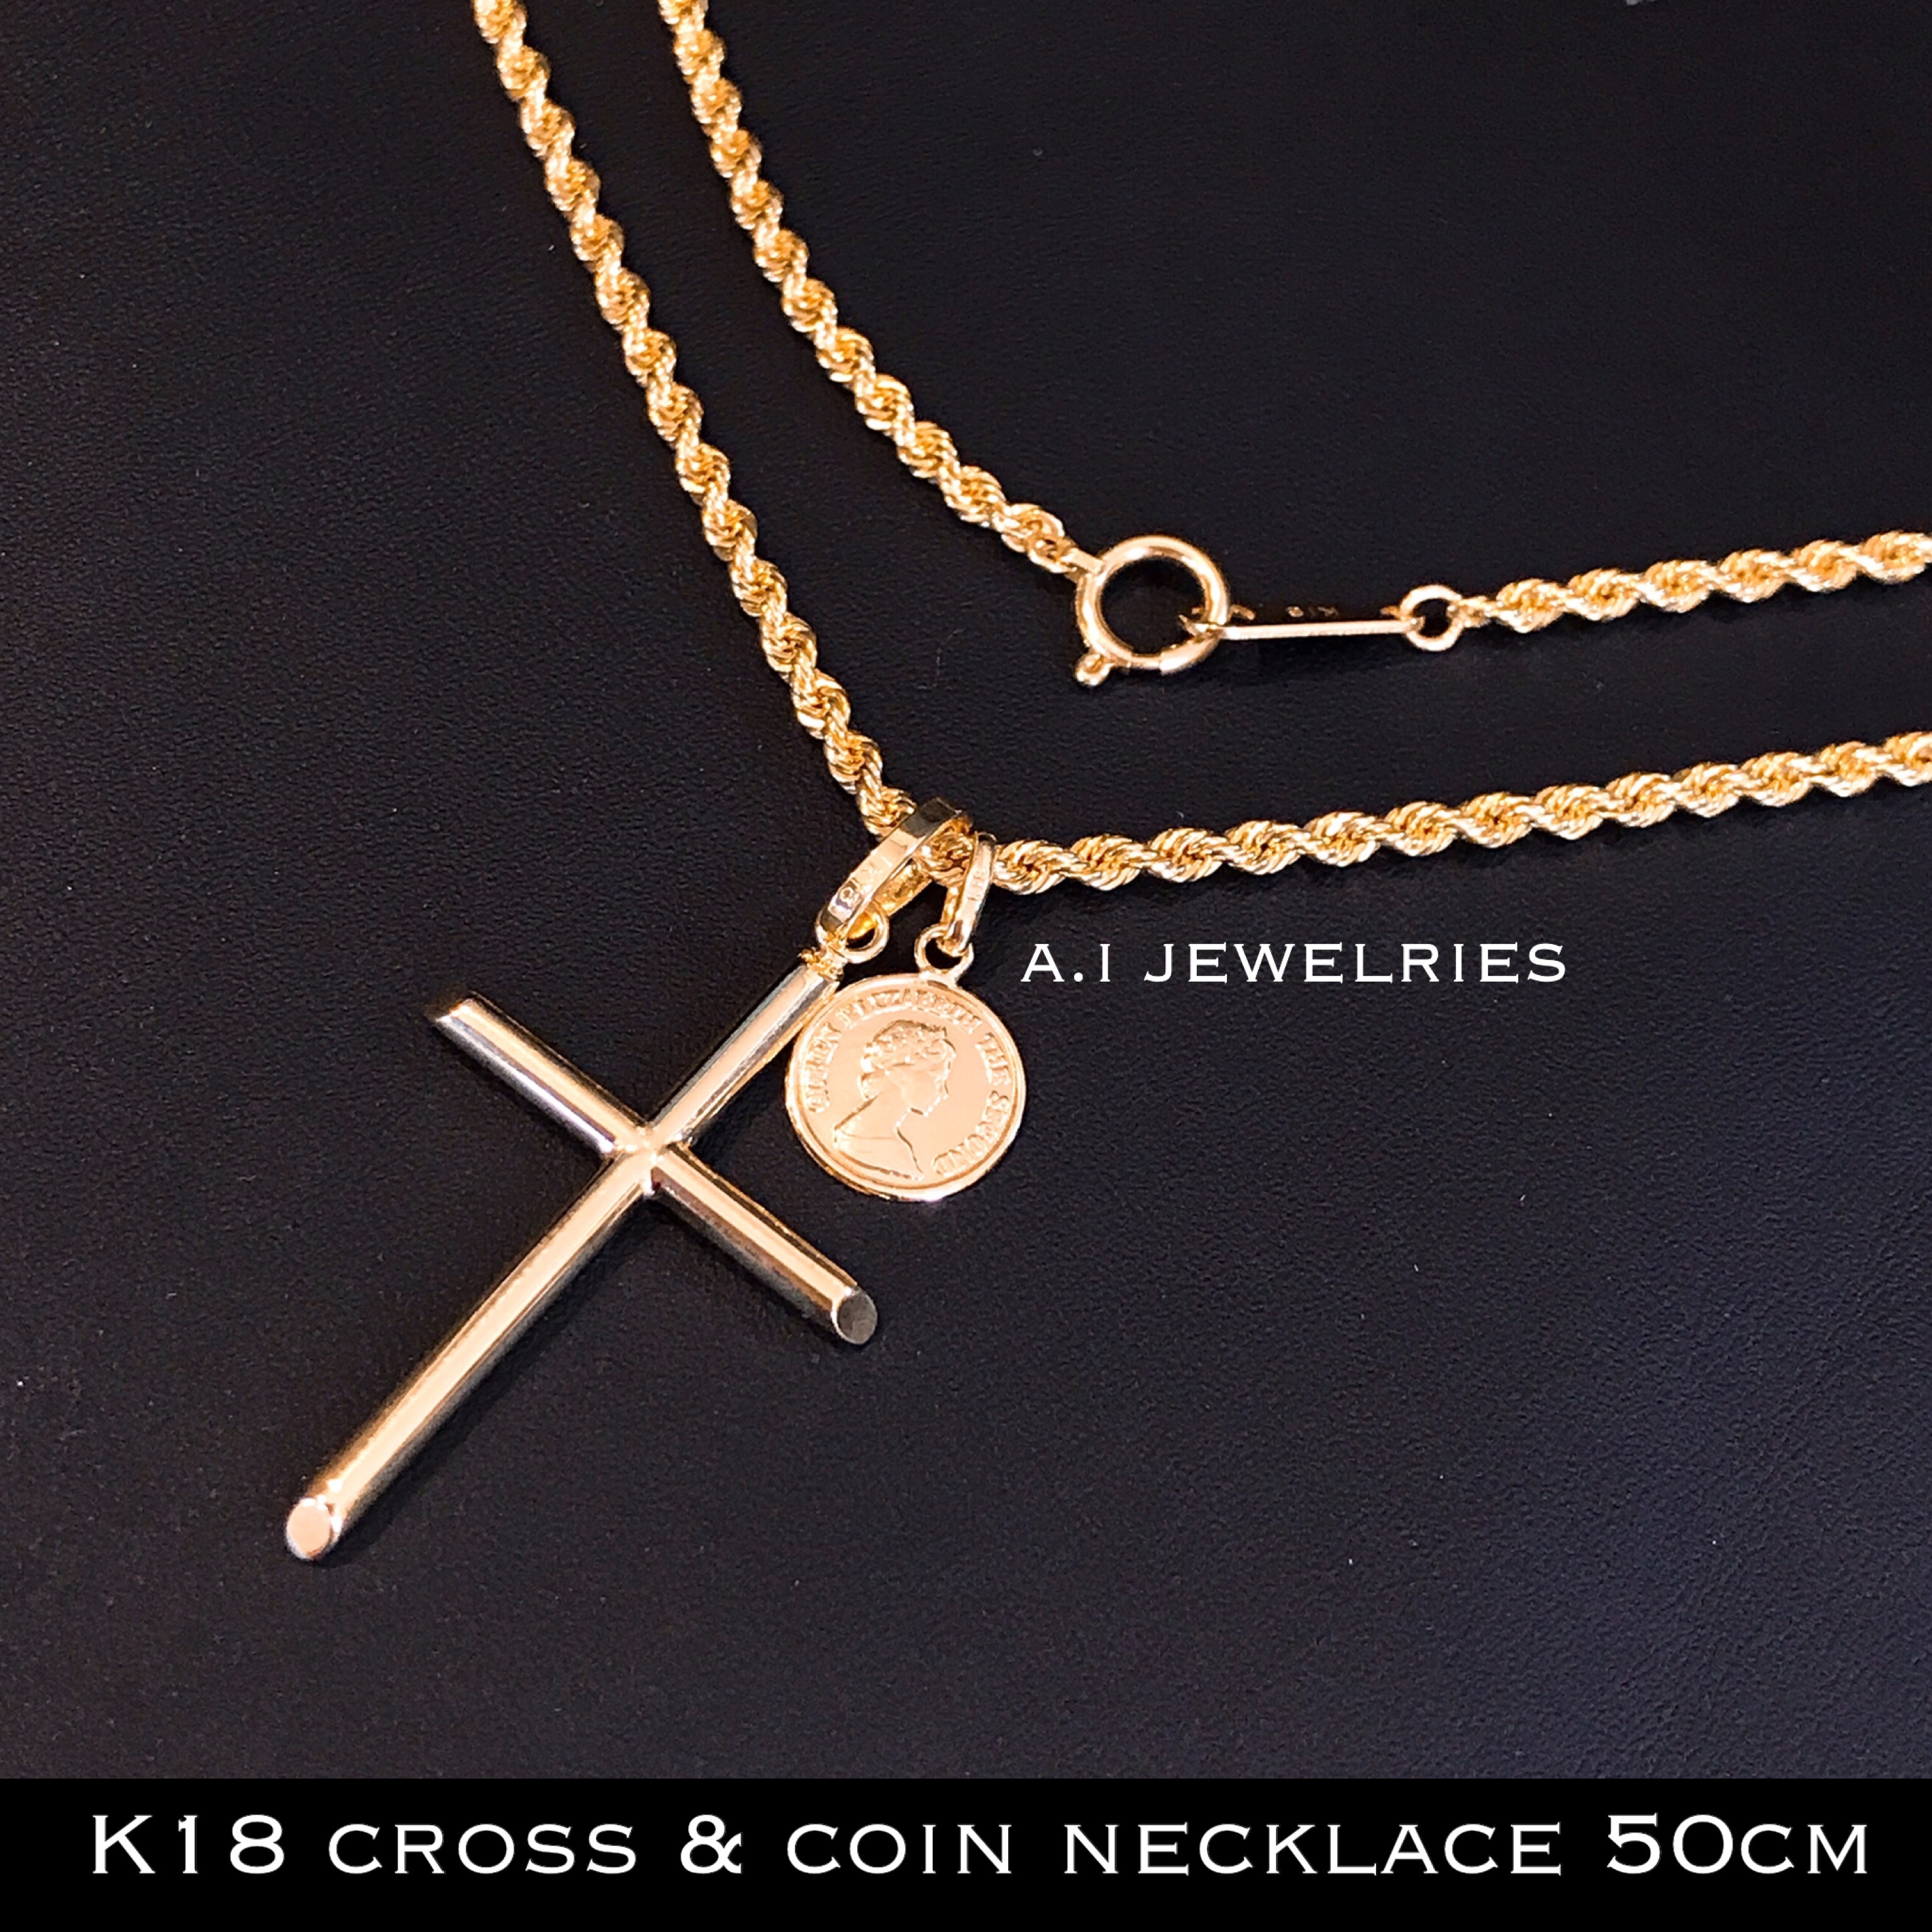 ネックレス メンズ 18金 クロス ロープ コイン ダブル ペンダント 新品 K18 Rope Cross Coin Necklace A I Jewelries エイアイジュエリーズ